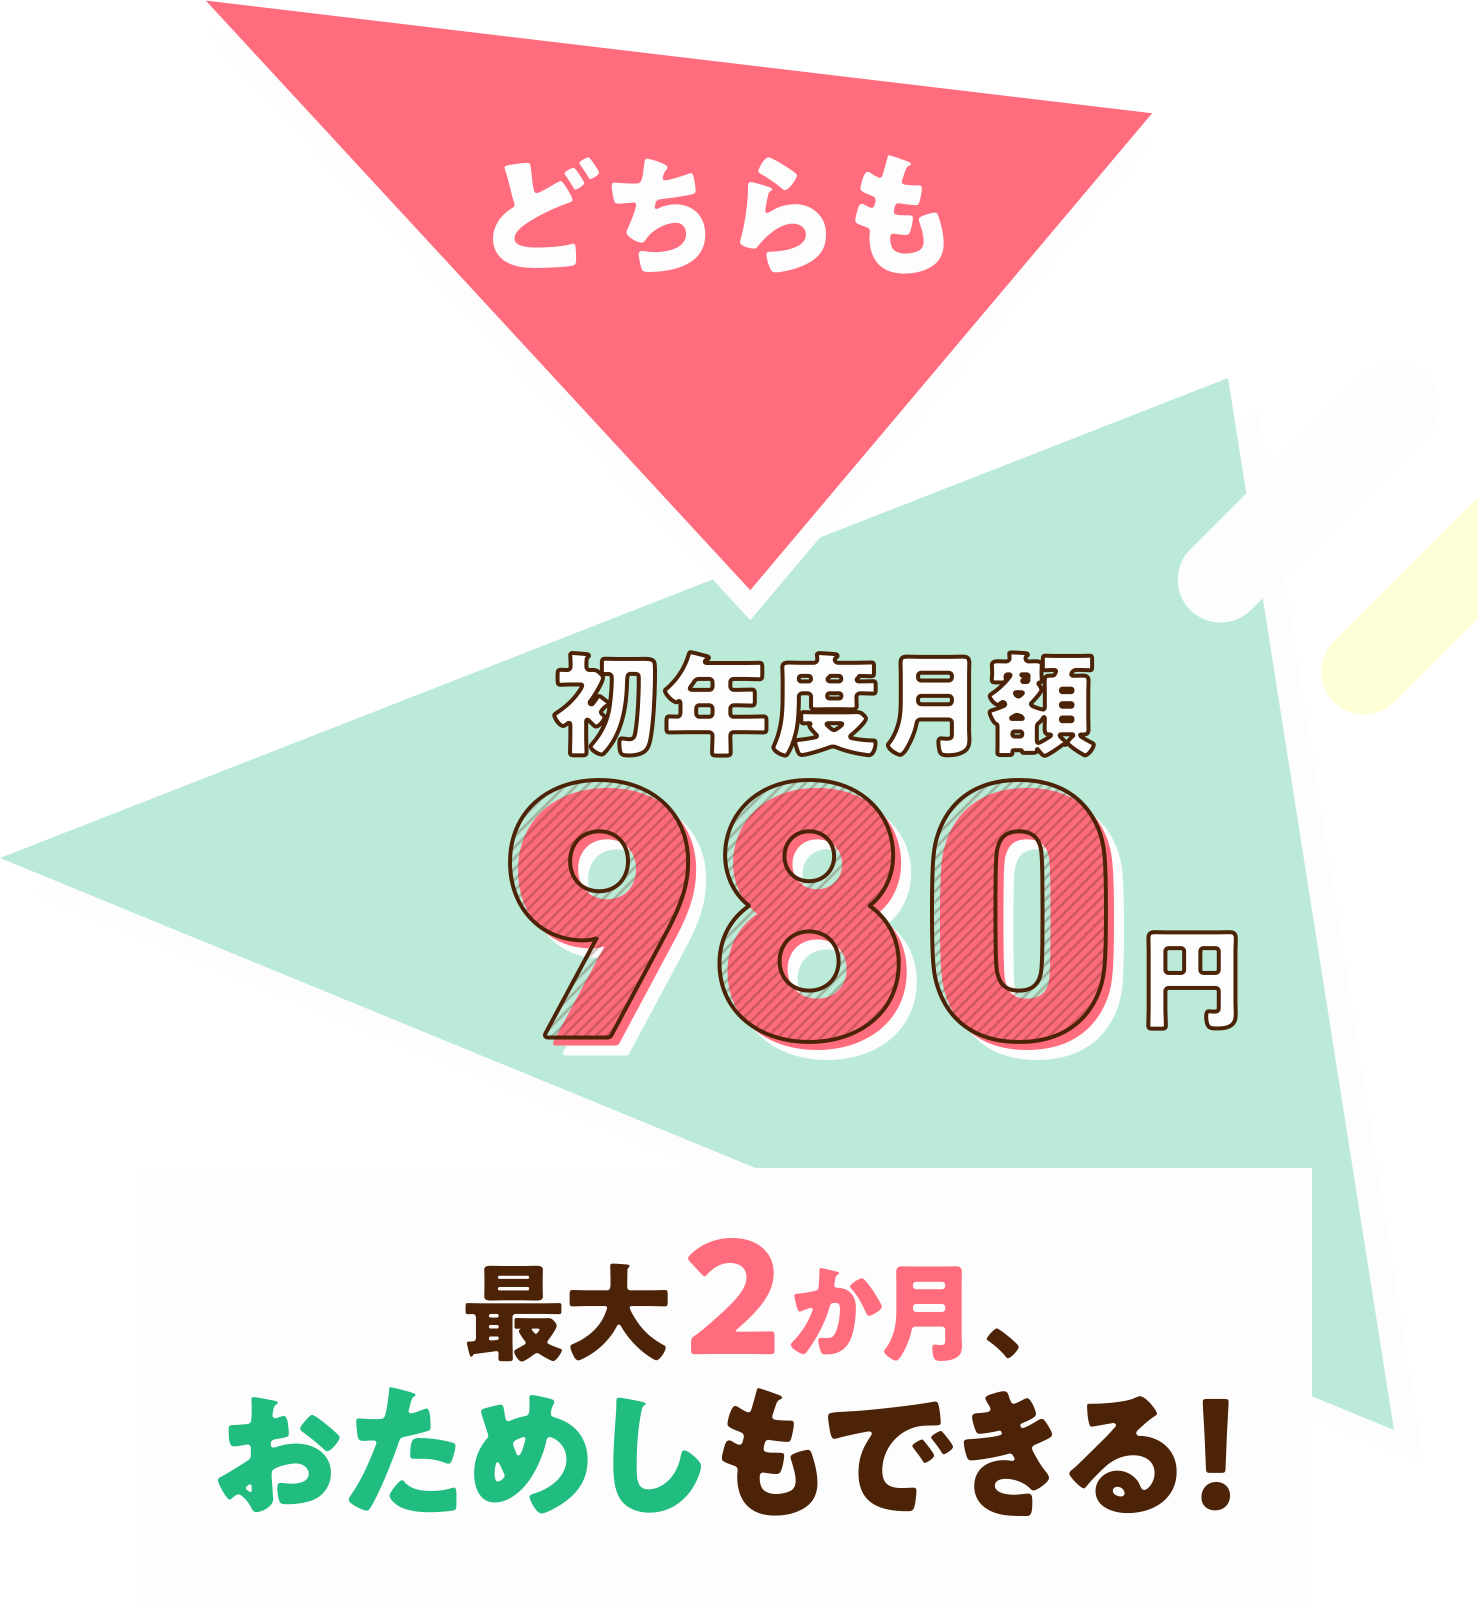 どちらも初年度月額980円 今日から、2か月無料体験をはじめよう!